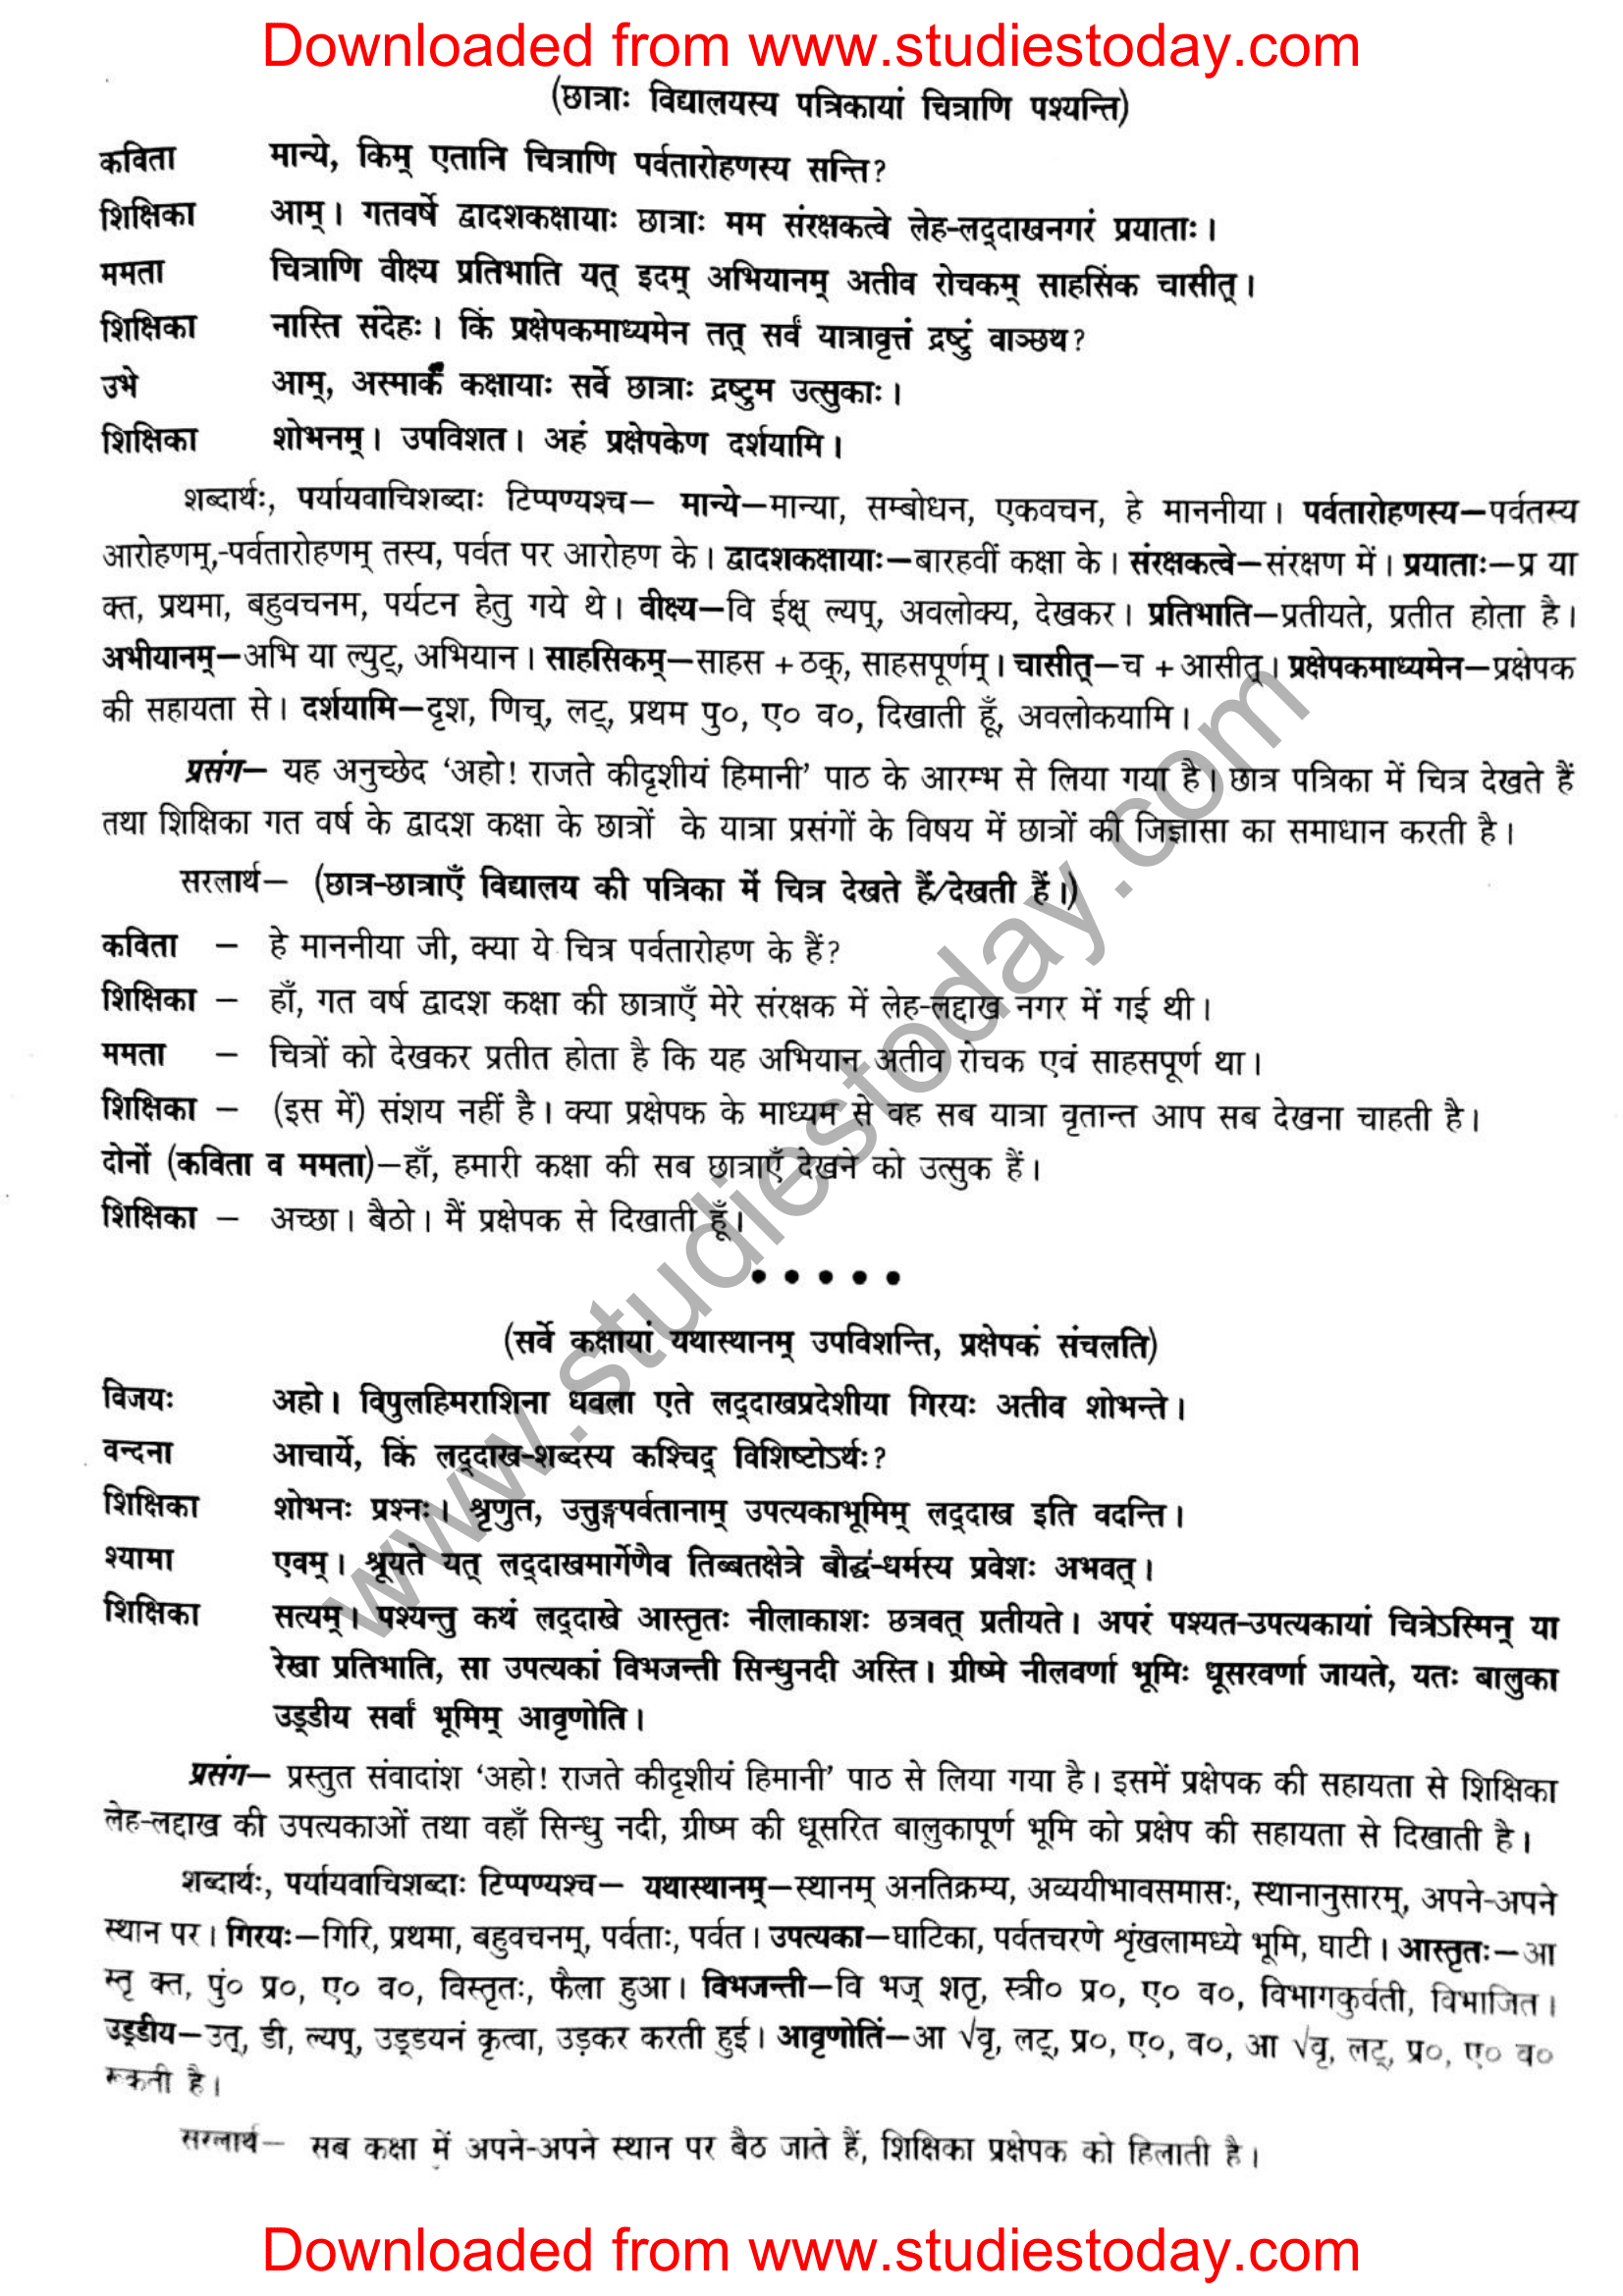 ncert-solutions-class-12-sanskrit-ritikia-chapter-5-02